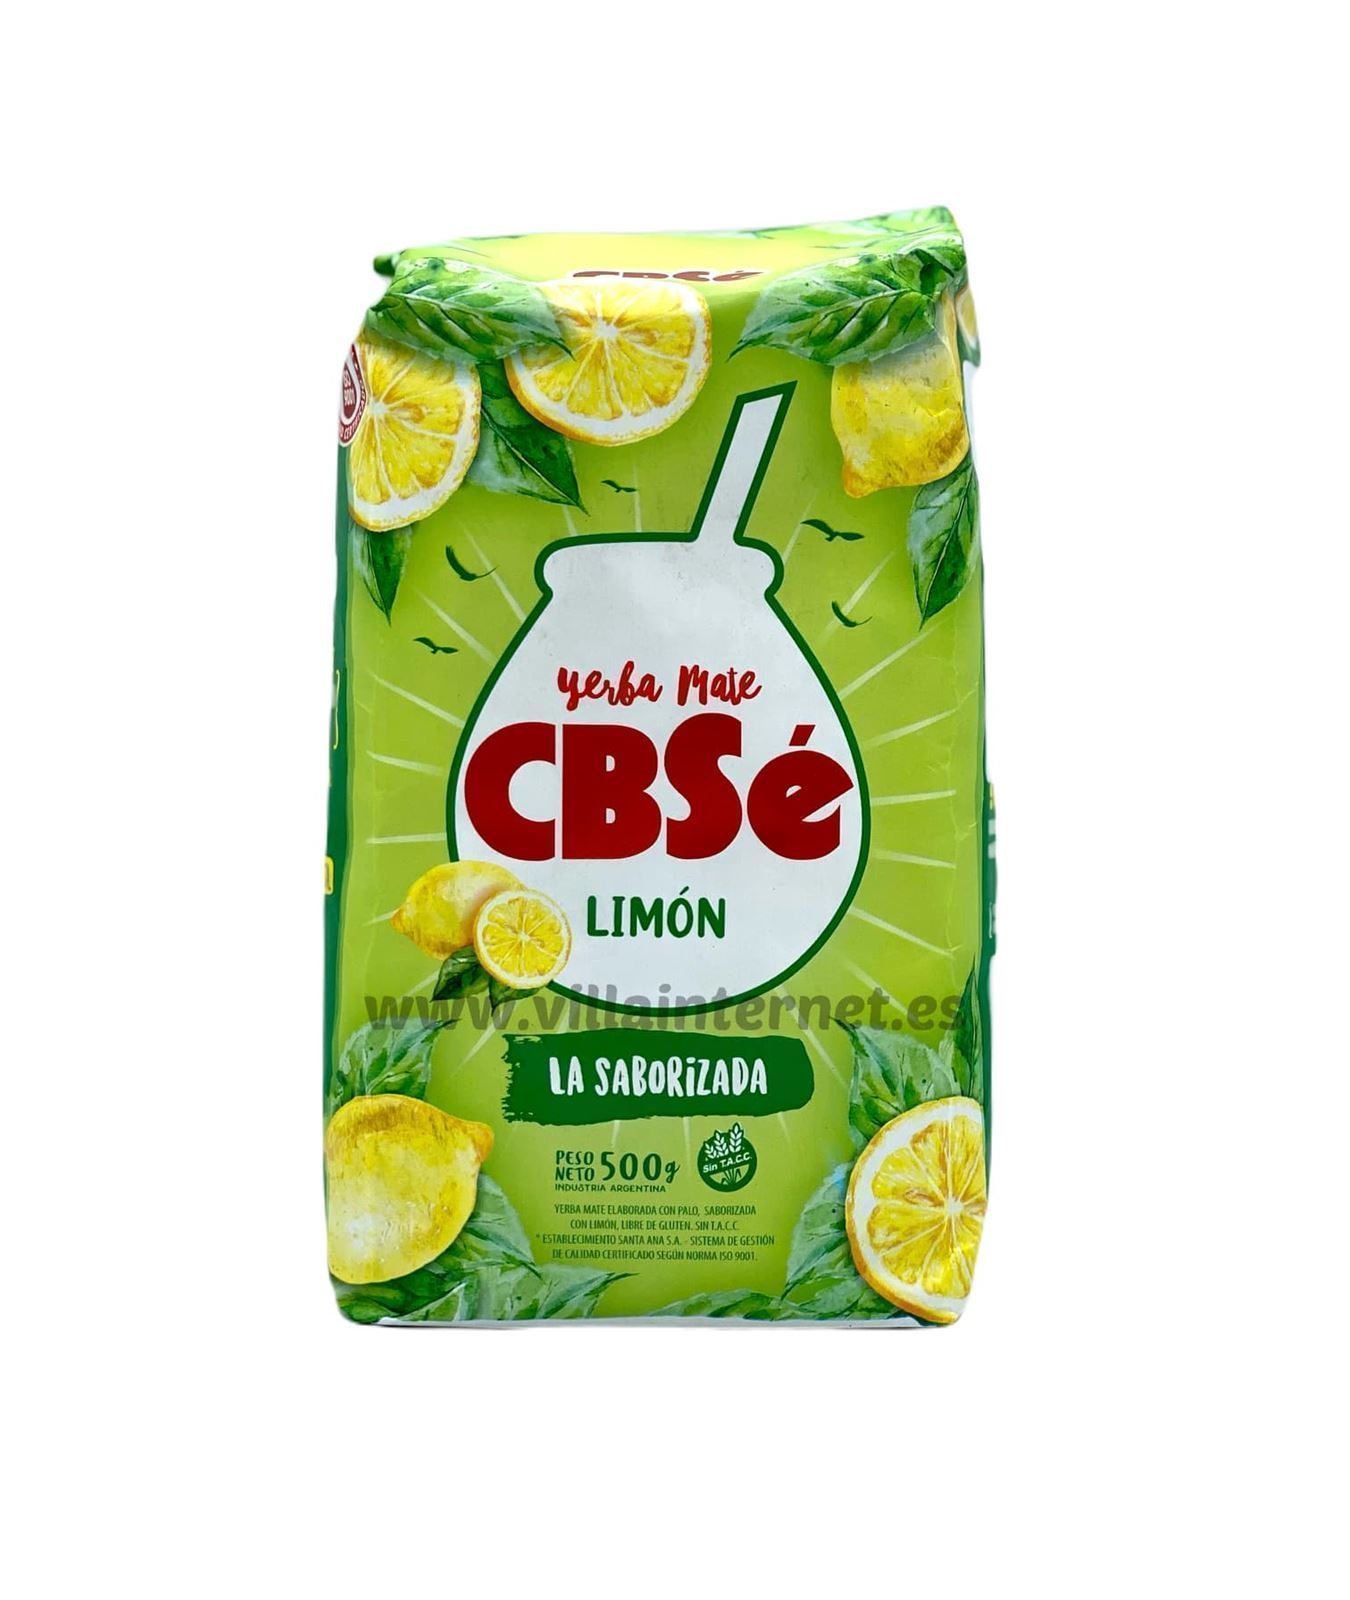 Yerba mate CBSé limón 500g - Imagen 1